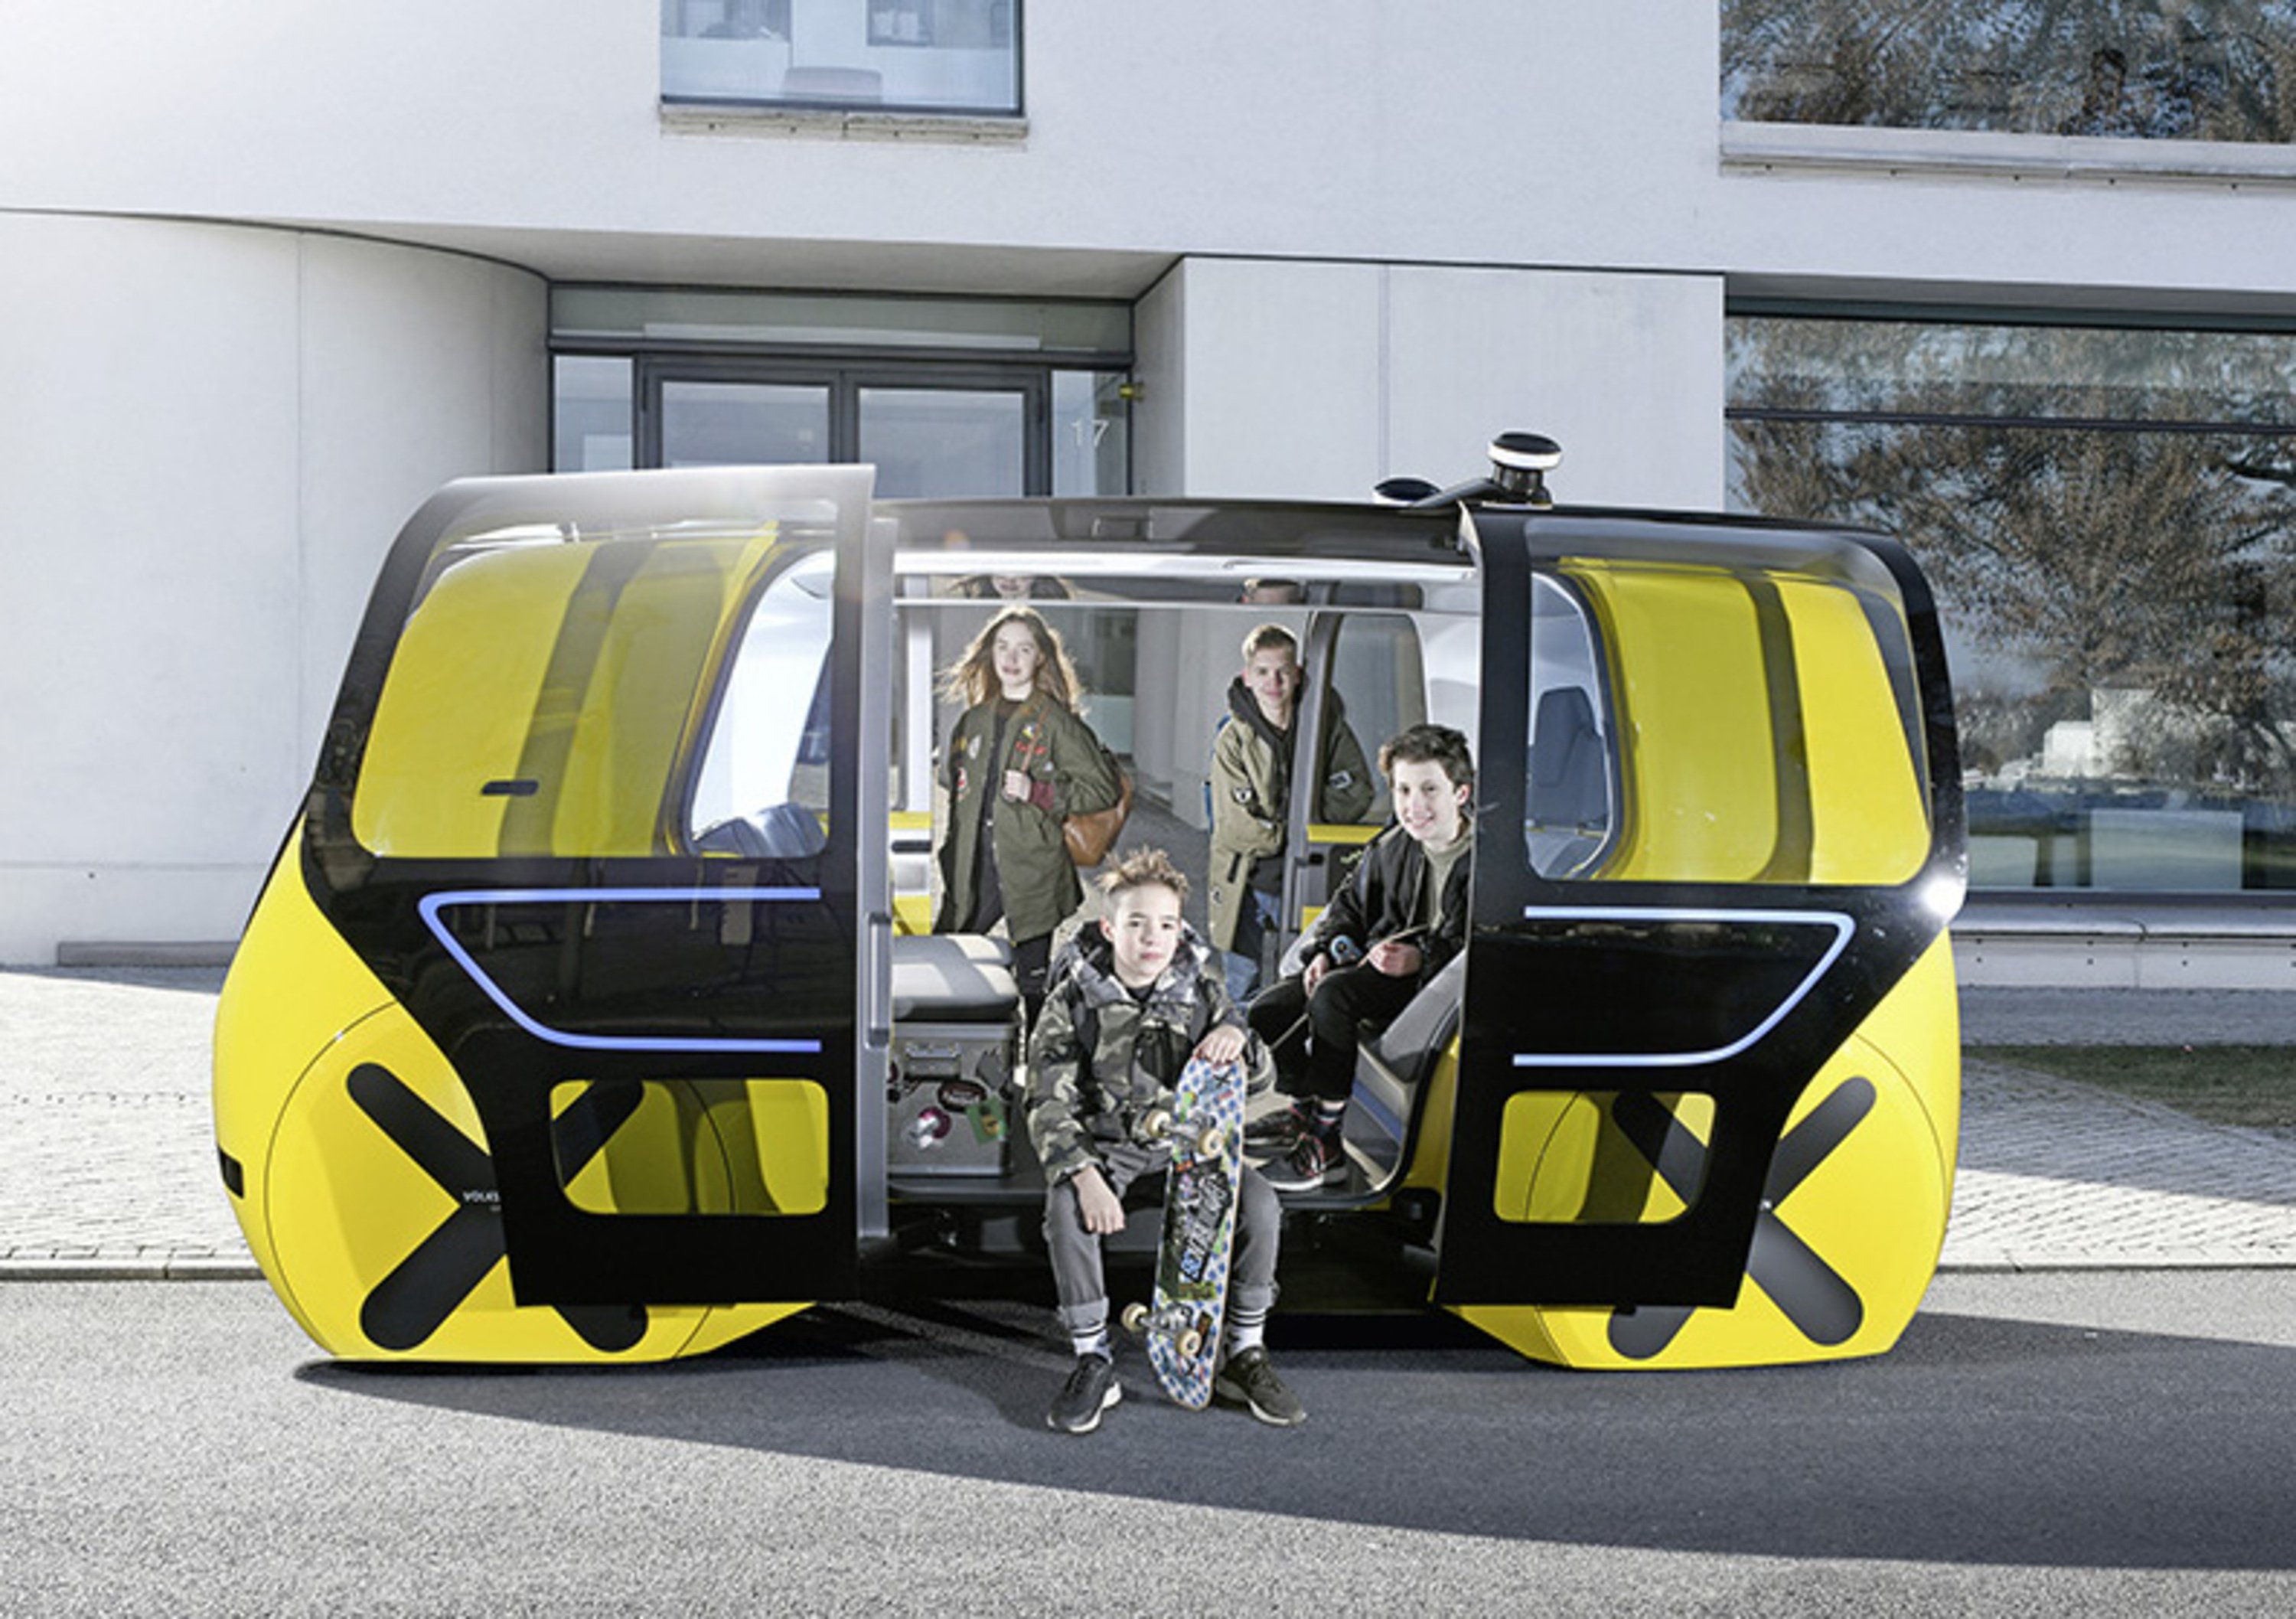 Volkswagen Sedric scuolabus al Salone di Ginevra 2018